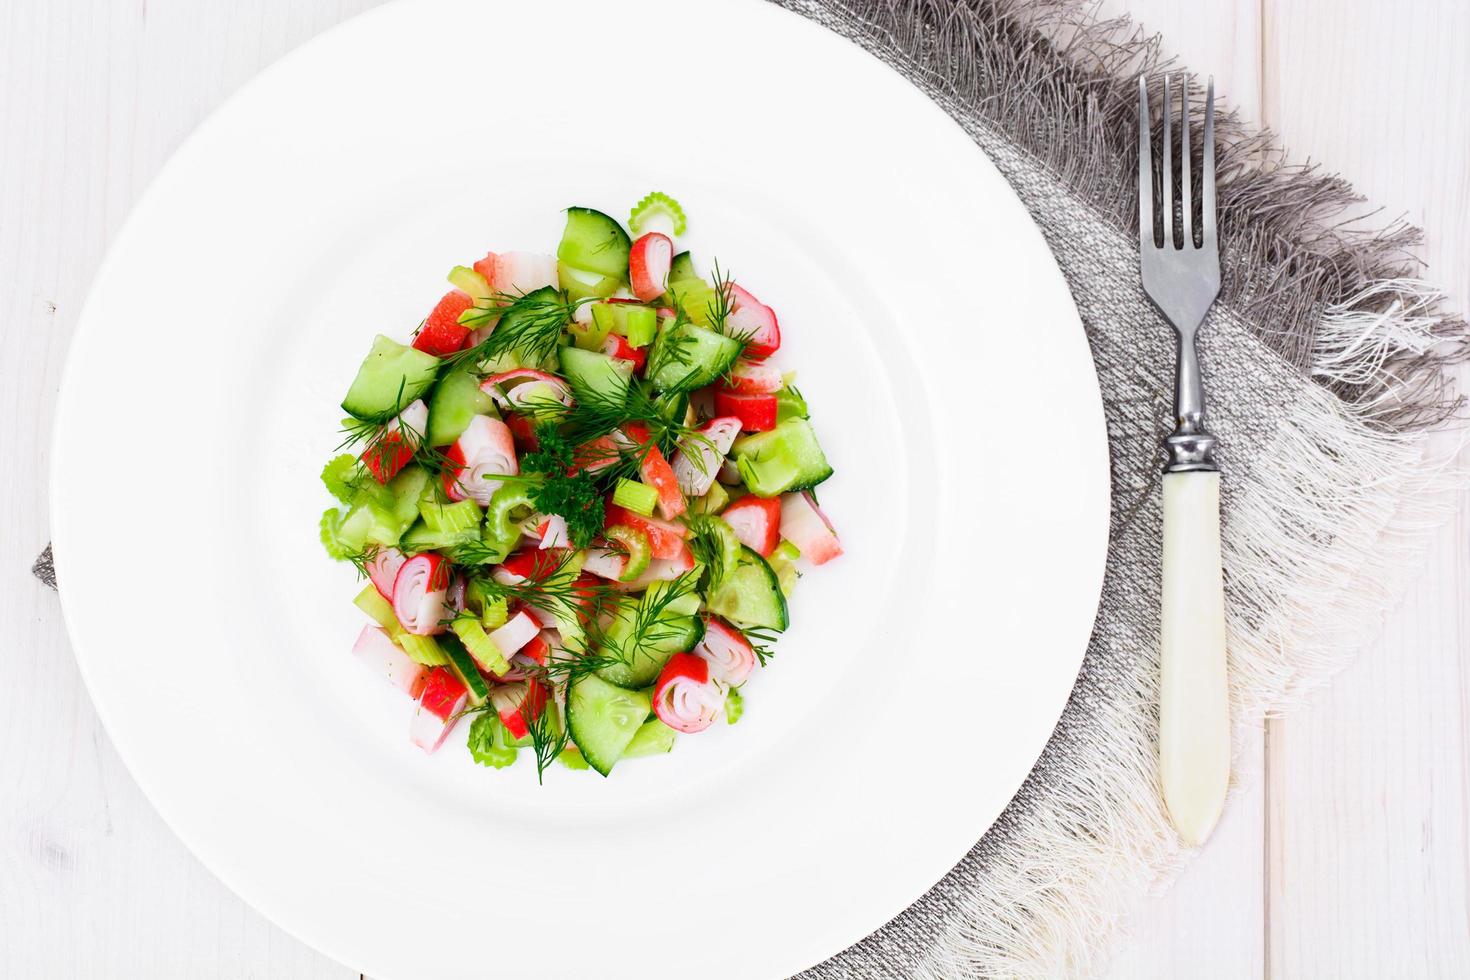 salade van bleekselderij, krabstick, komkommer, groene olijven en dille foto